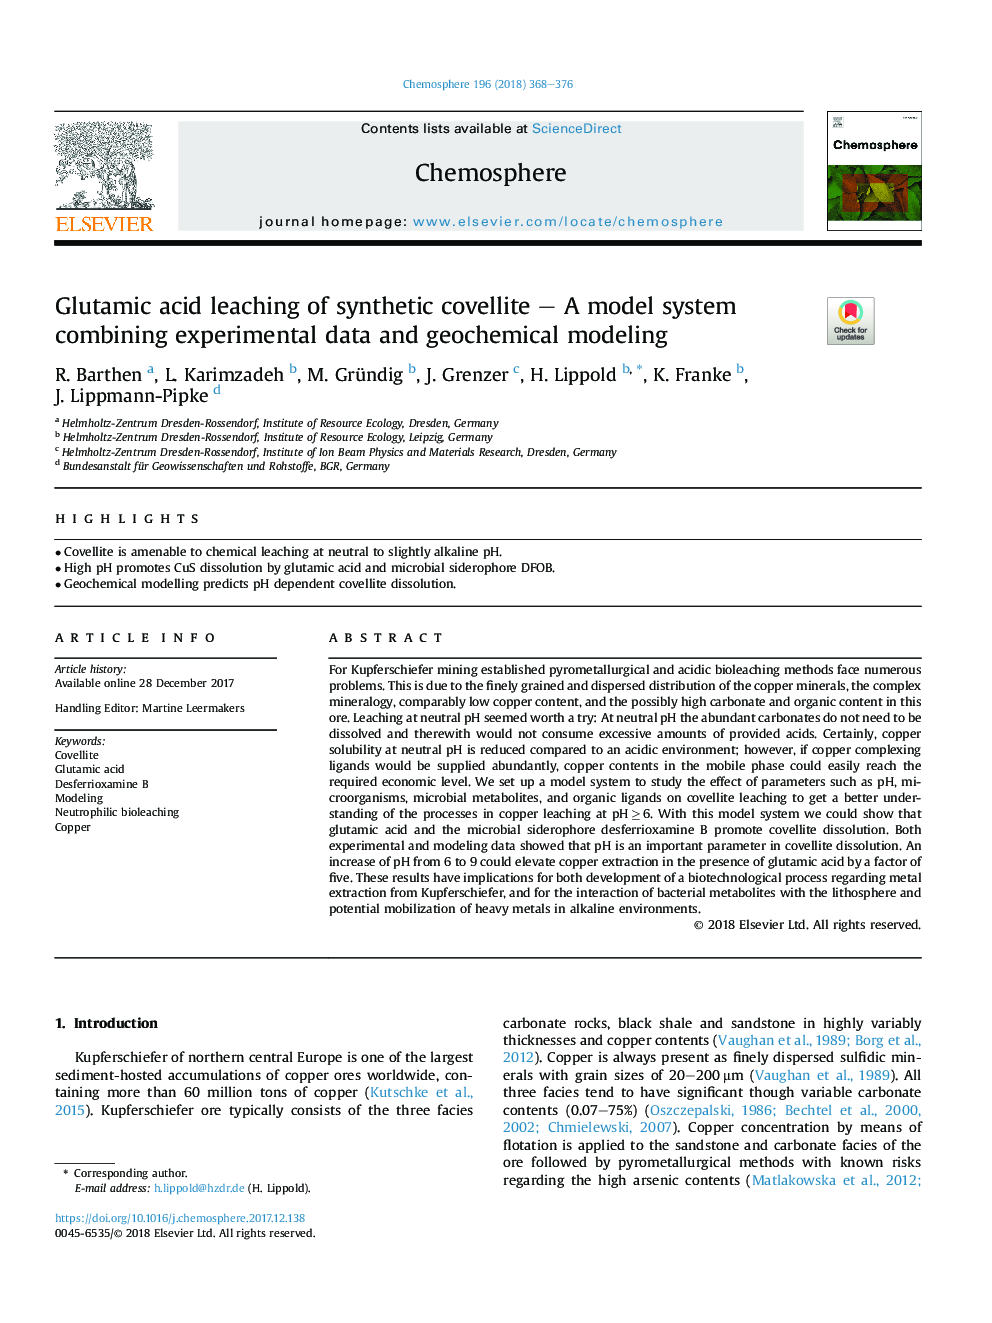 شستشوی گلوتامیک اسید کولیت سنتتیک - سیستم مدل ترکیبی داده های تجربی و مدل سازی ژئوشیمیایی 